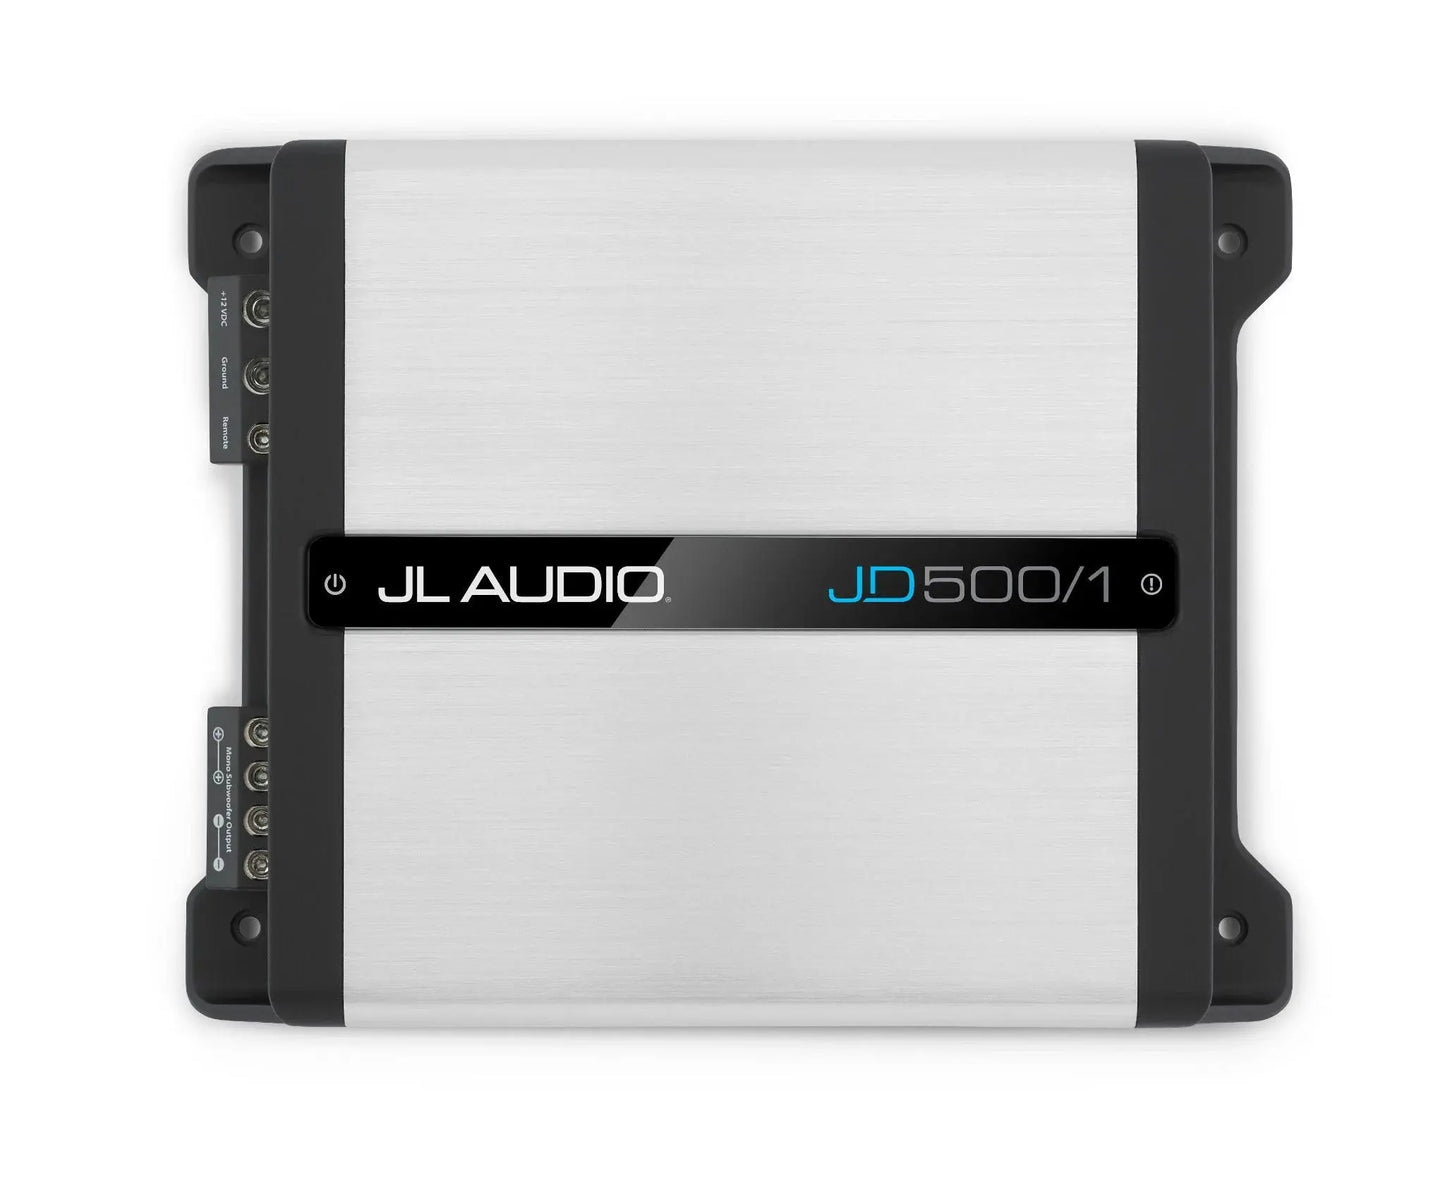 JD500/1 Product vendor